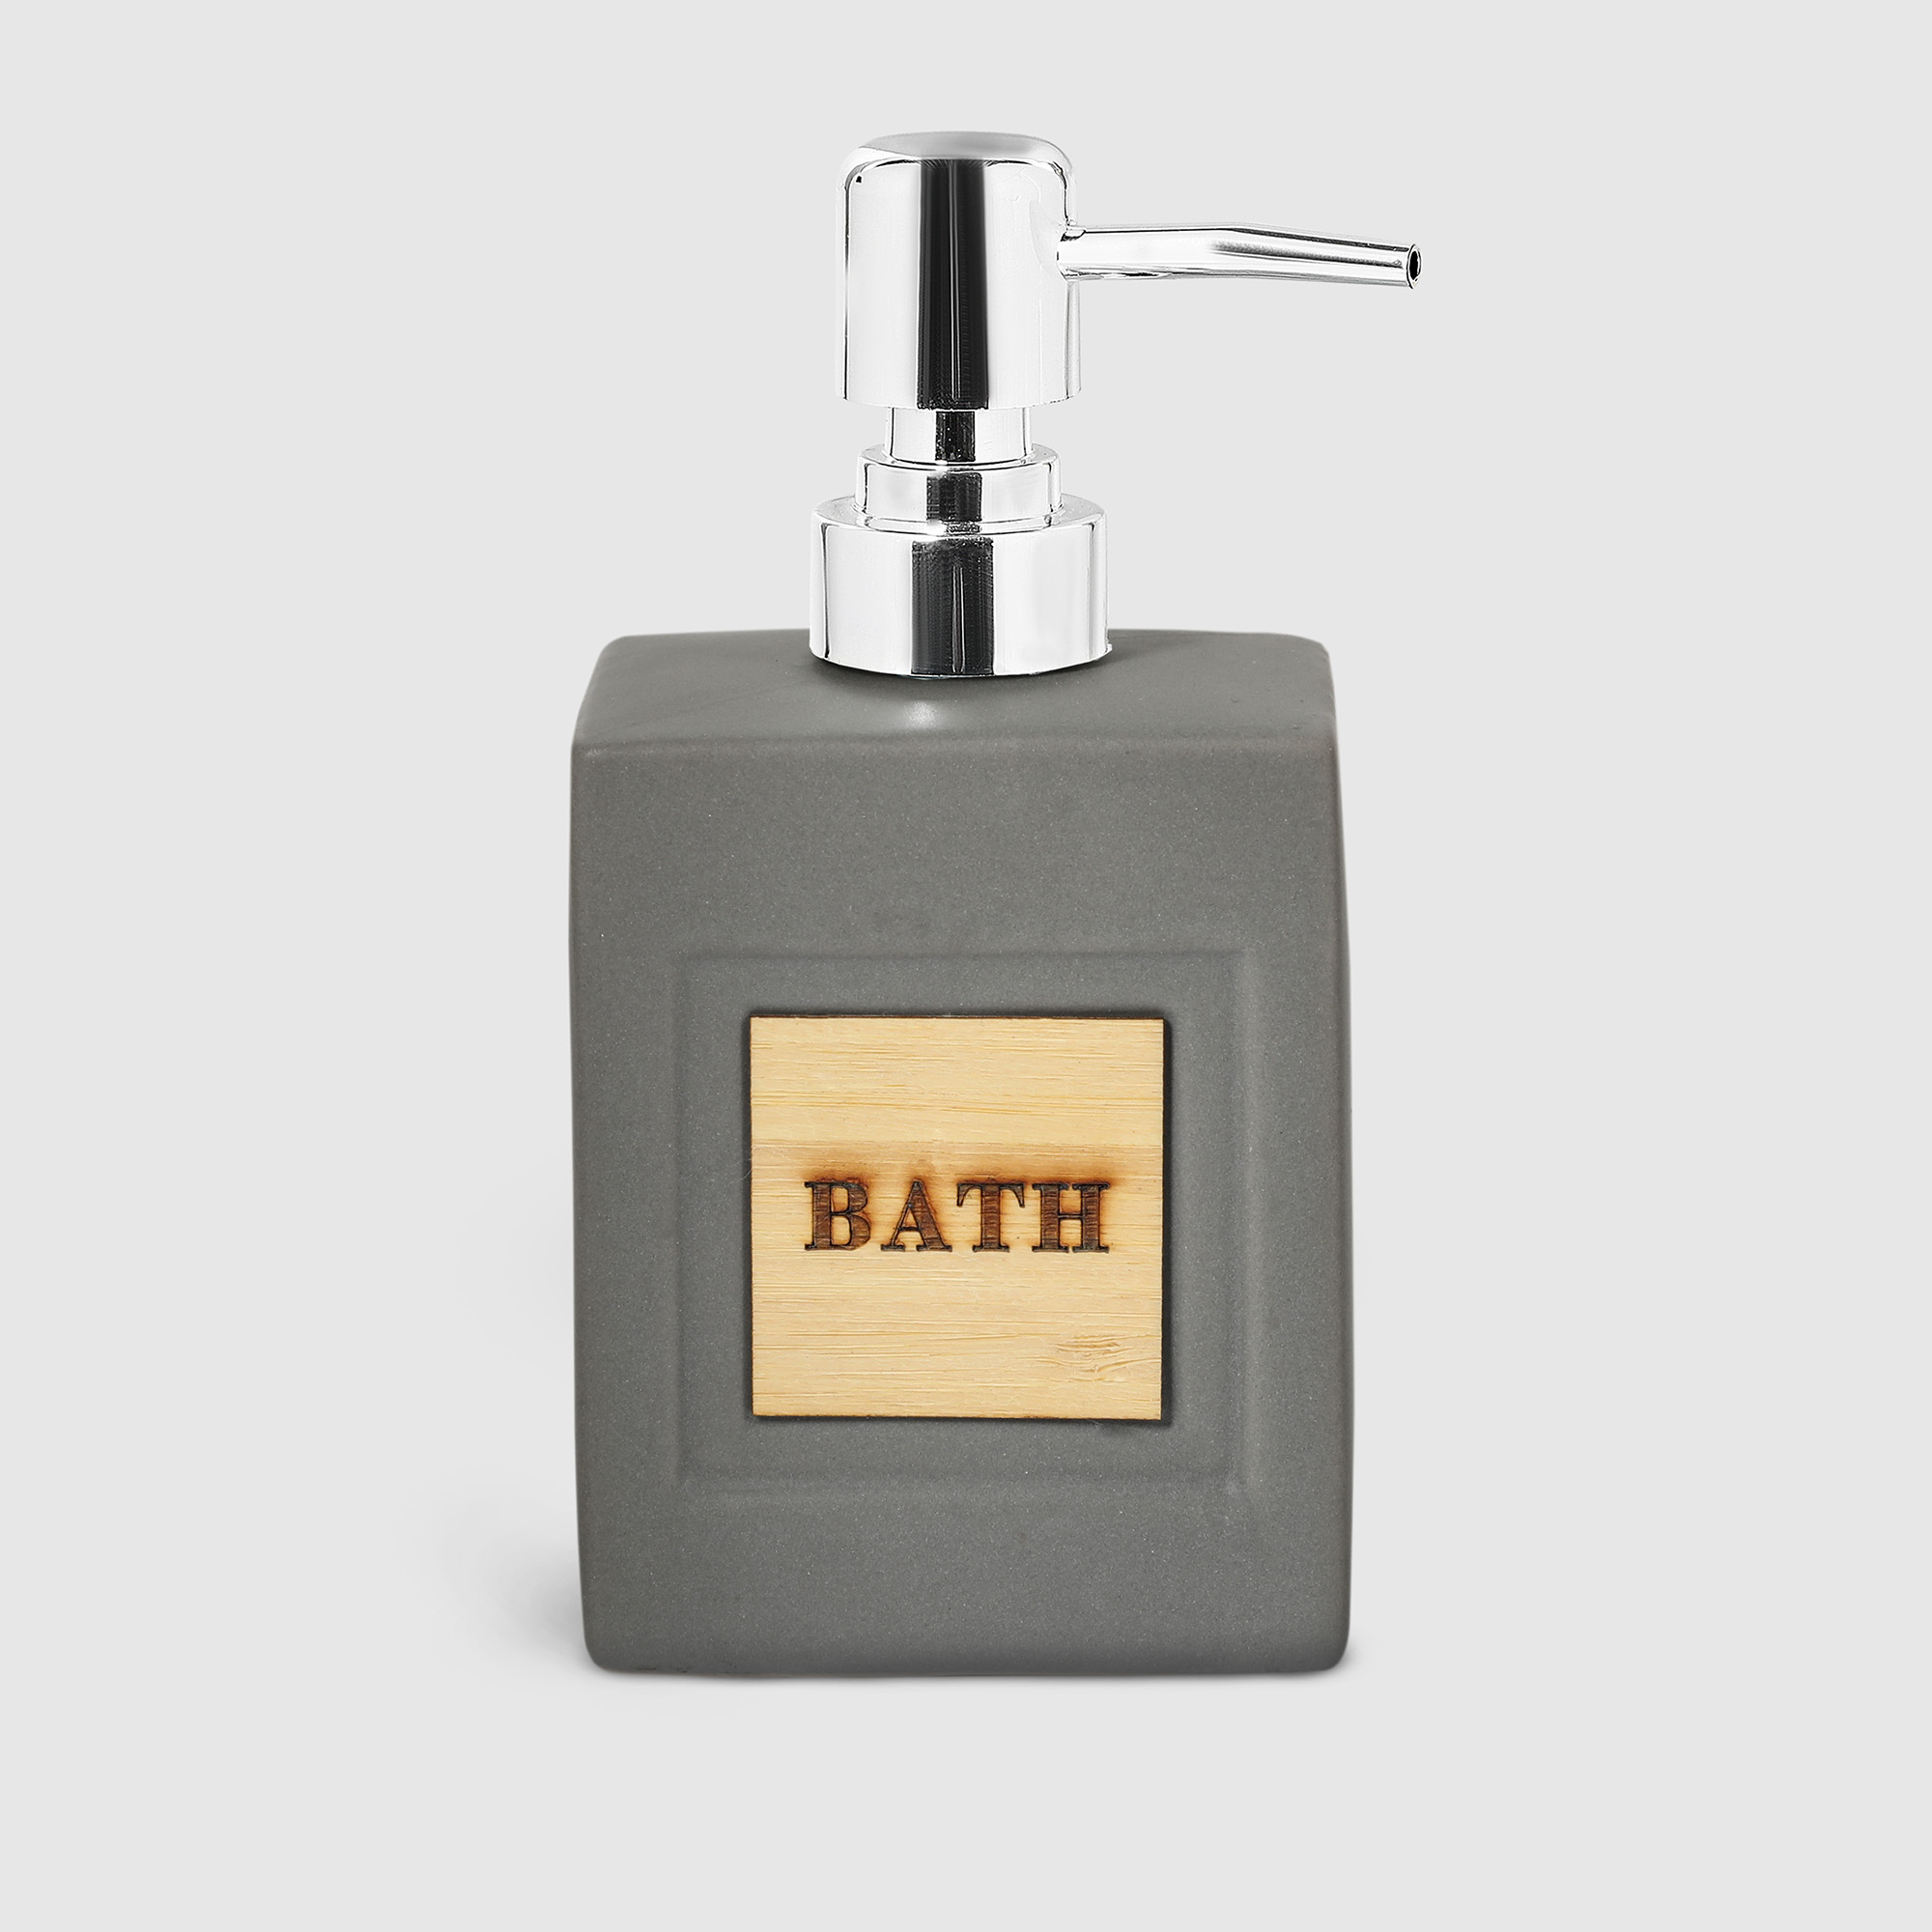 Диспенсер Mercury Sanitary BATH для жидкого мыла, в ассортименте - фото 5